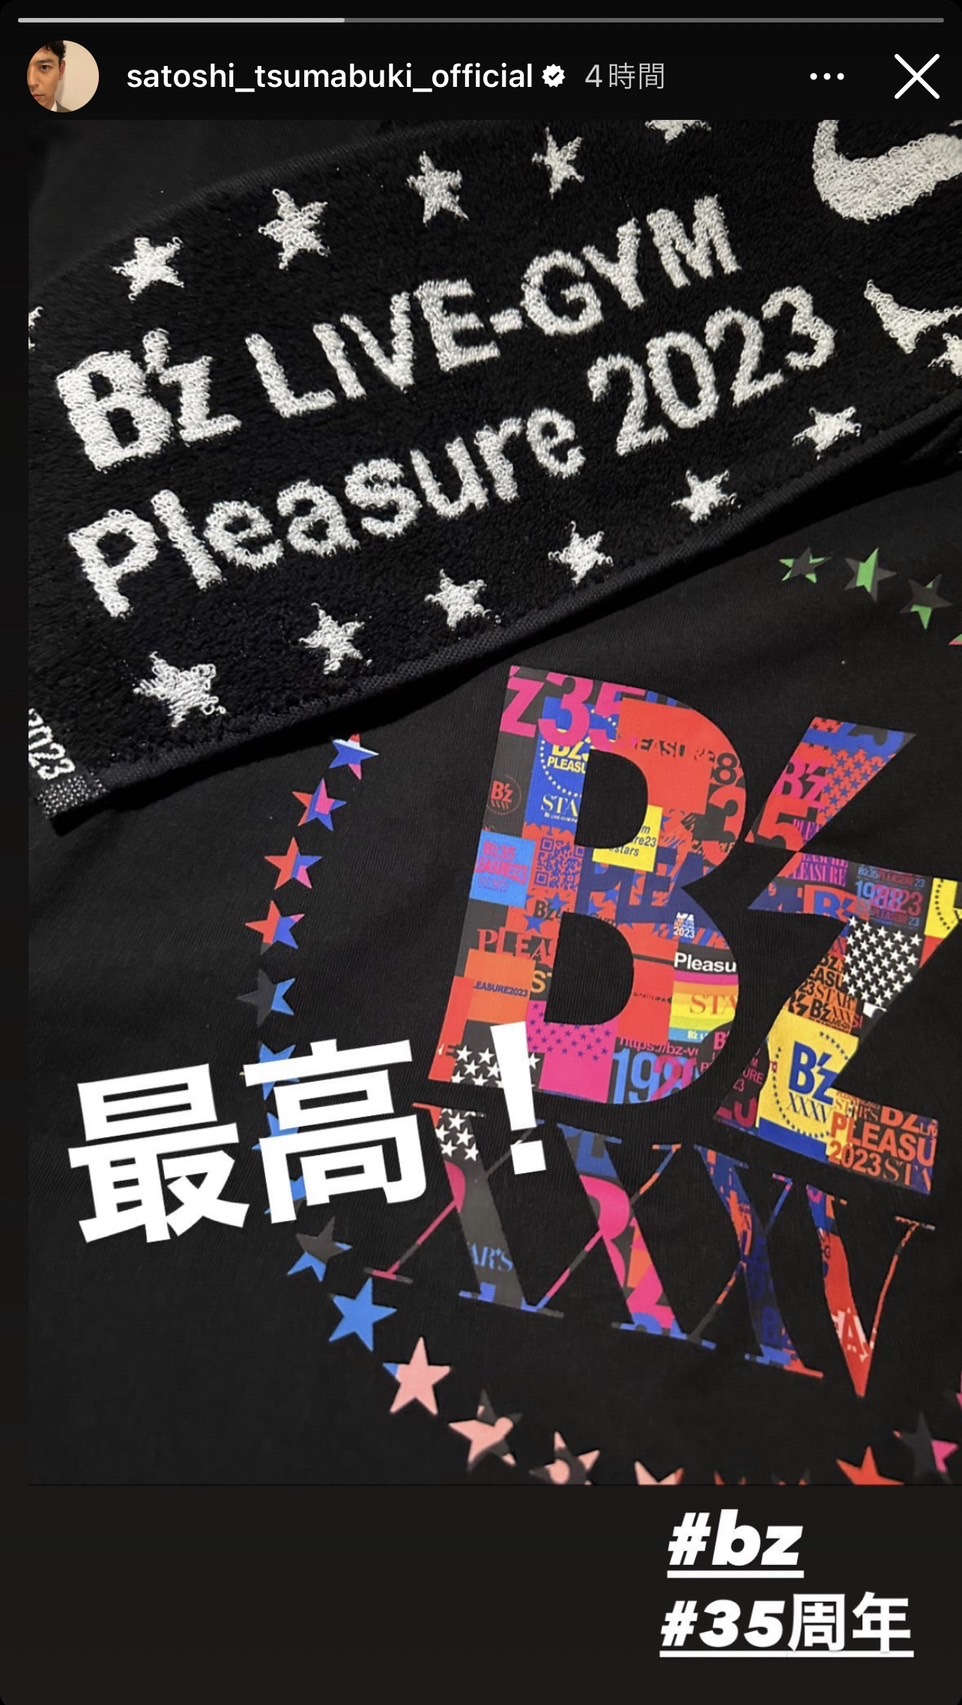 妻夫木聡がB'z『STARS』ツアーの東京・有明アリーナ公演1日目を観覧したことを報告したInstagram投稿